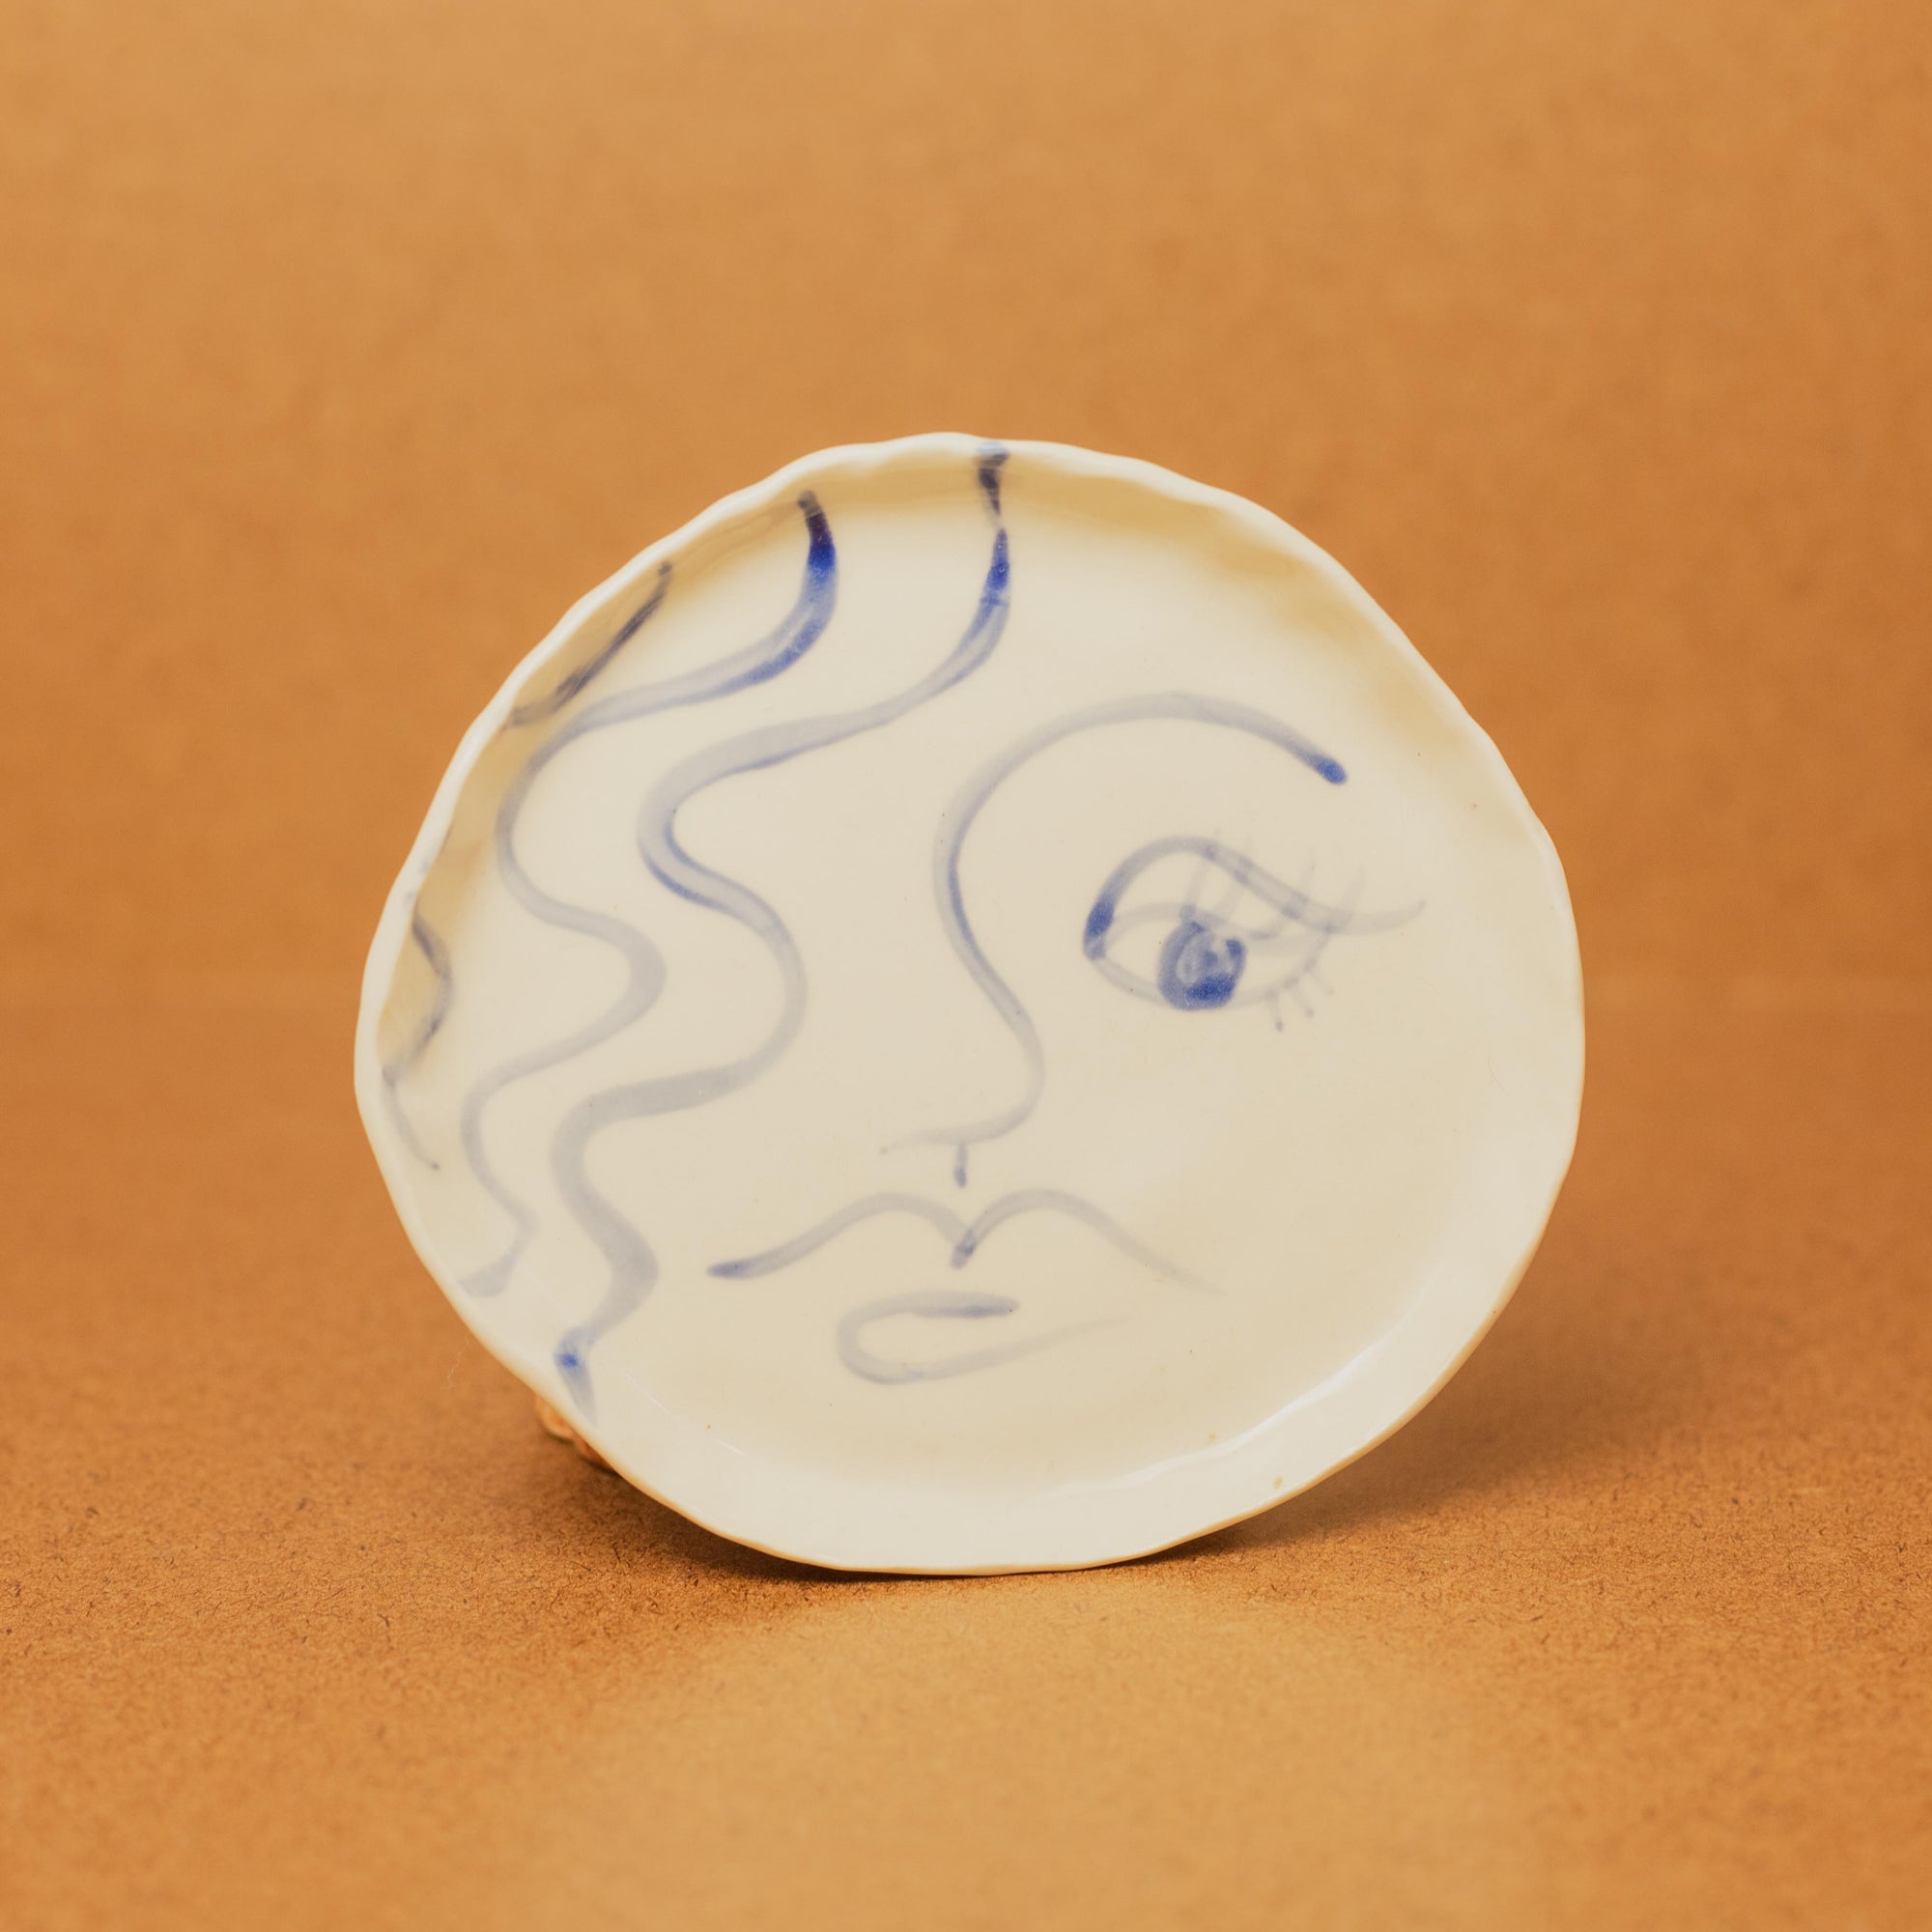 Rex Design - Ceramic Dish face